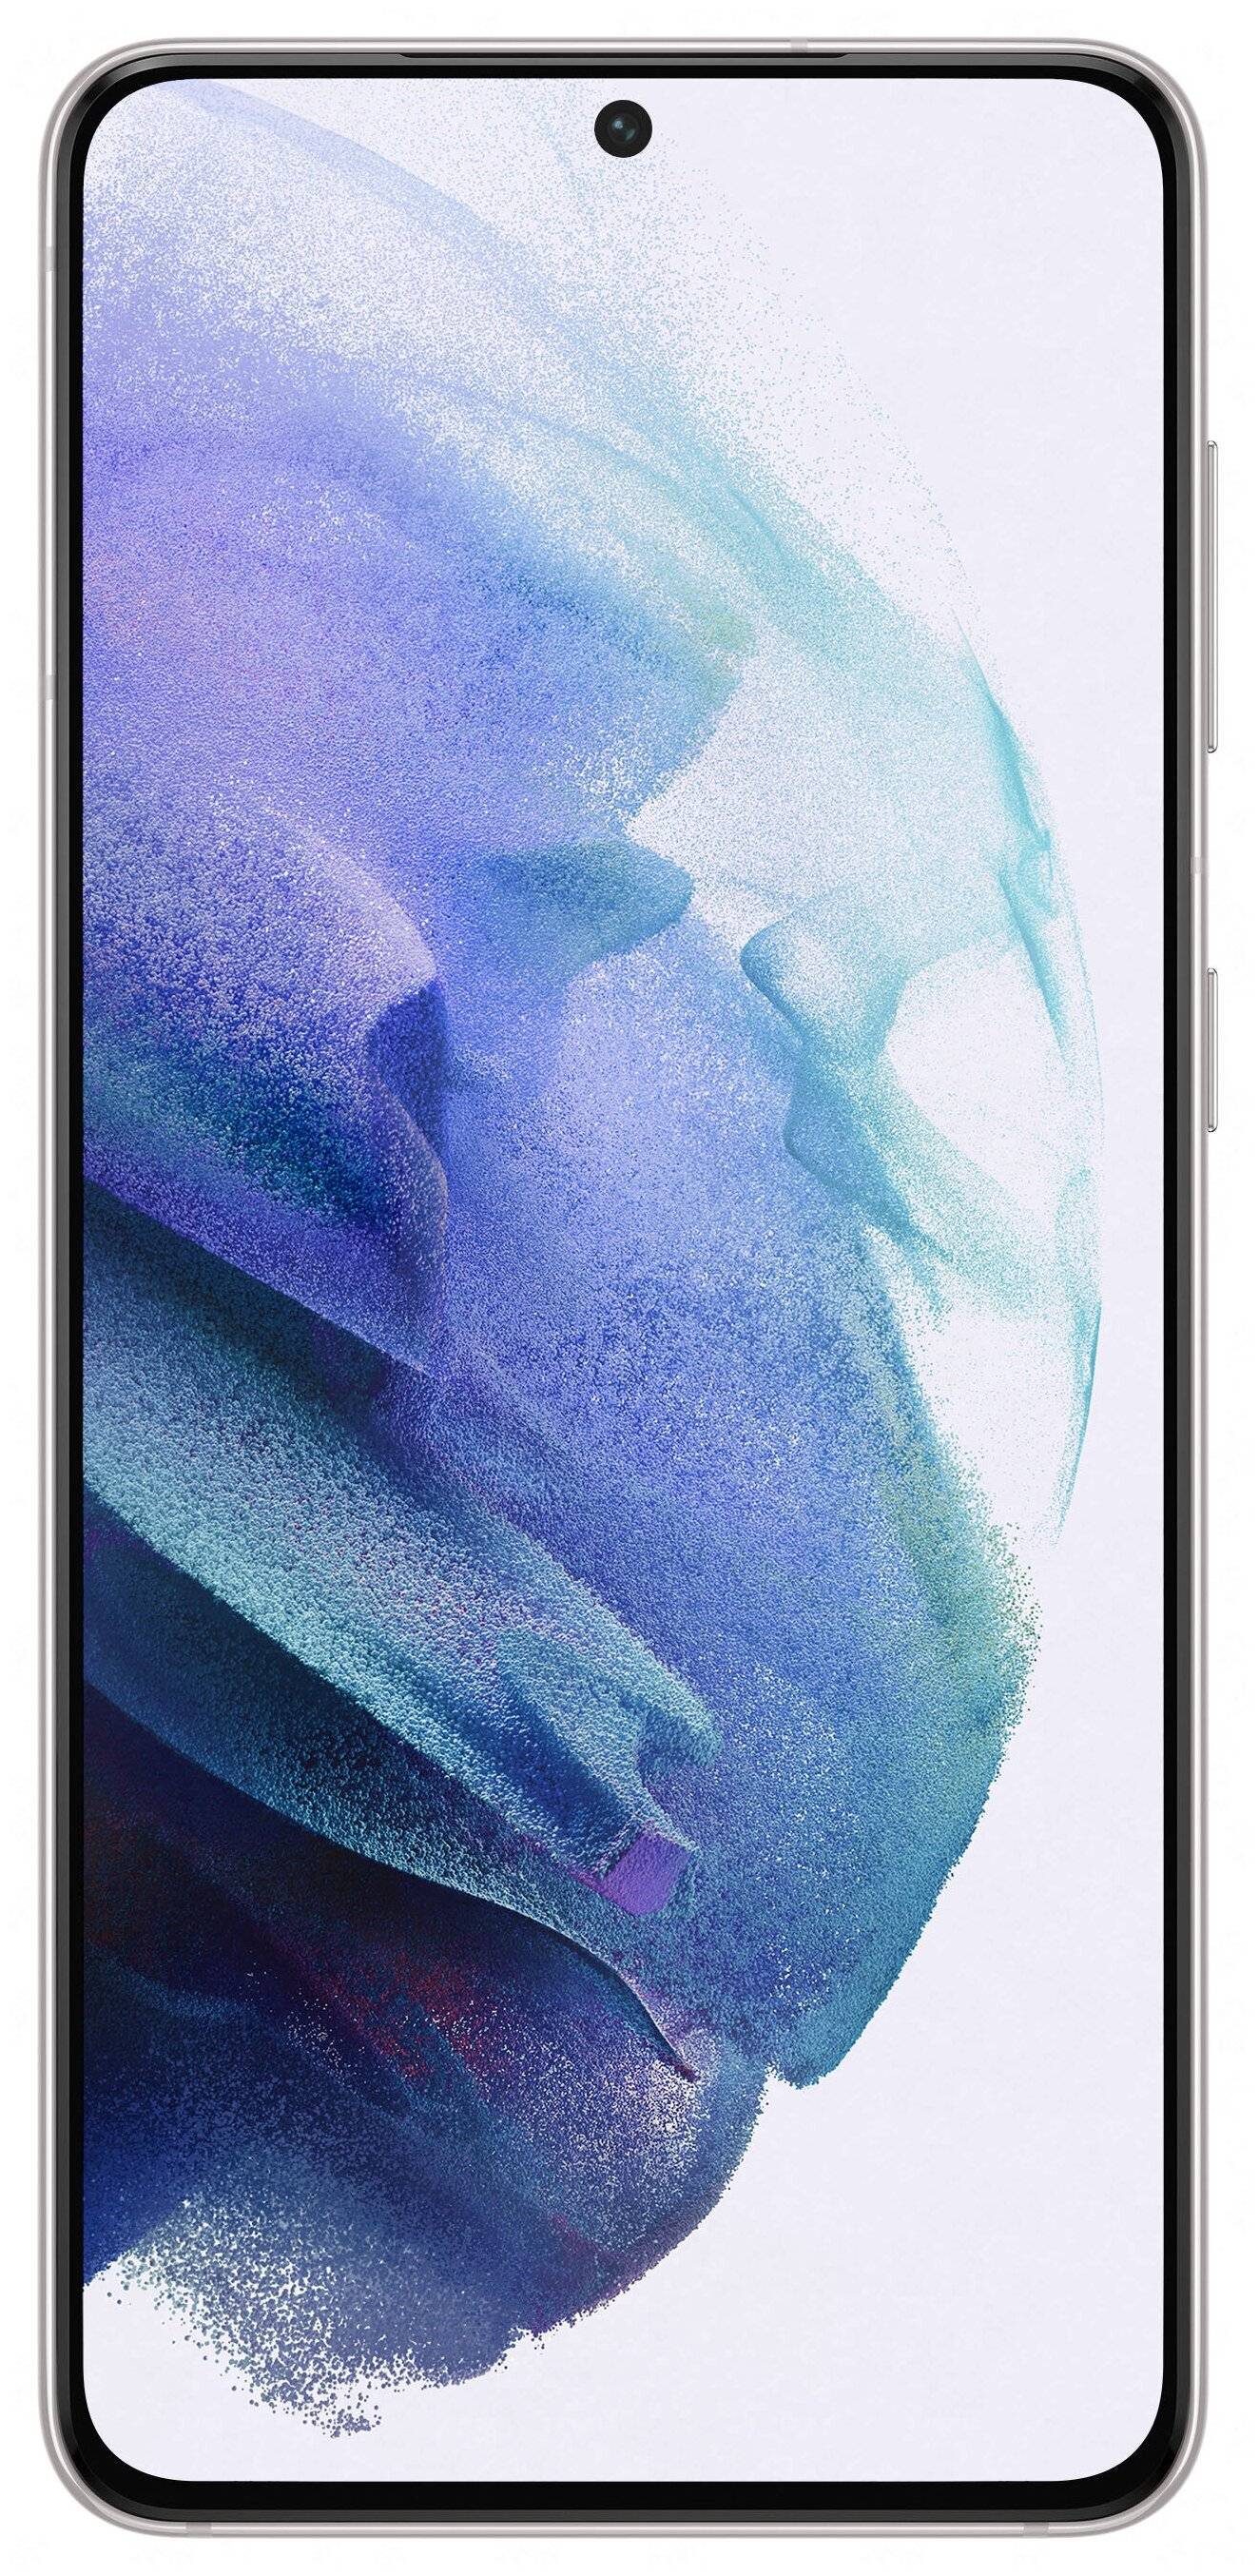 Samsung Galaxy S21 (белый, 256 ГБ)